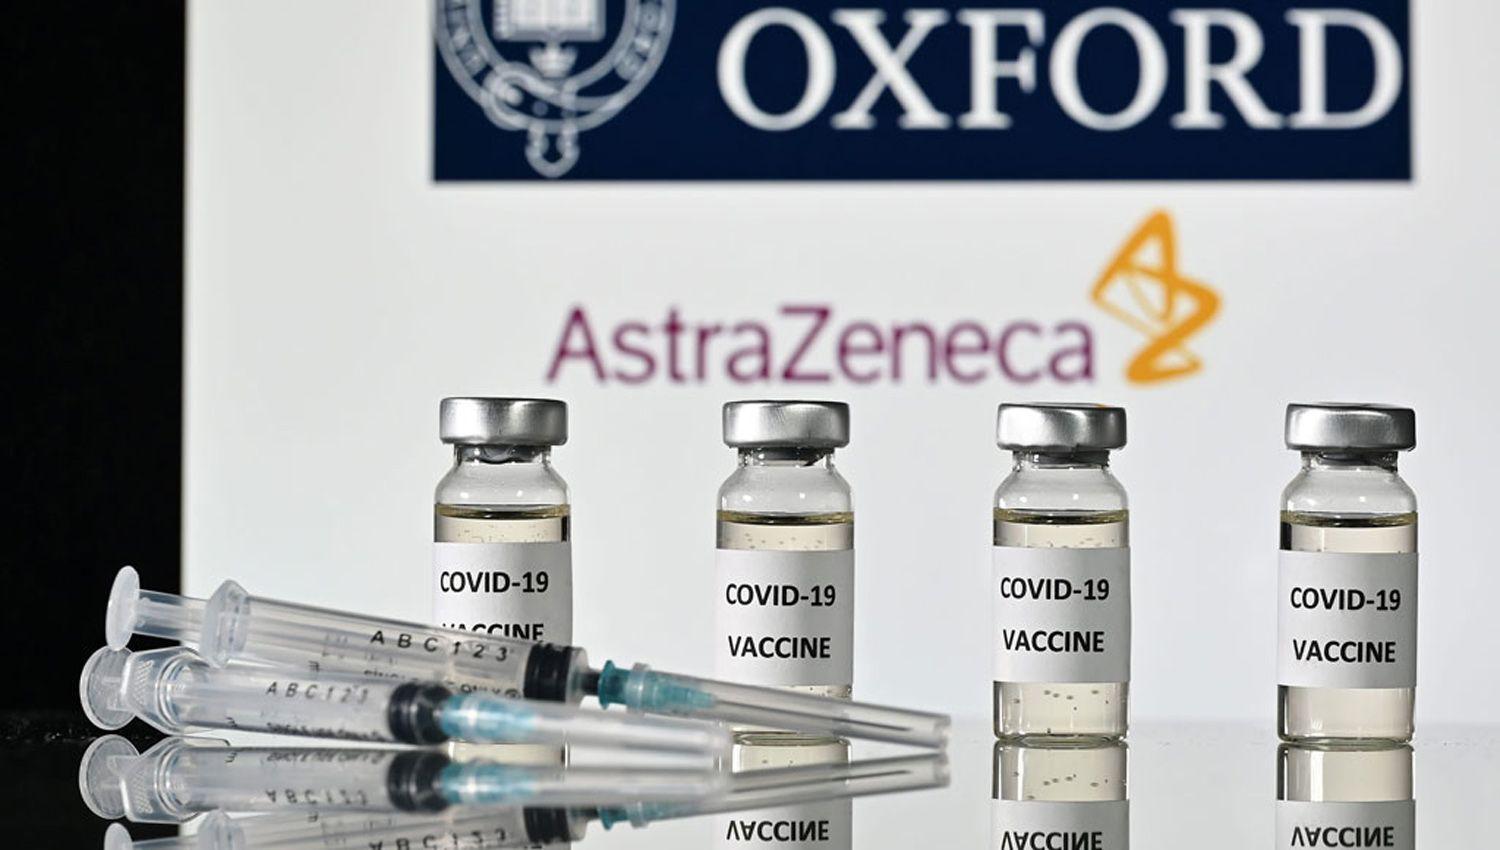 Alemania Francia Italia y Espantildea suspendieron la aplicacioacuten de la vacuna de Oxford y AstraZeneca contra el coronavirus